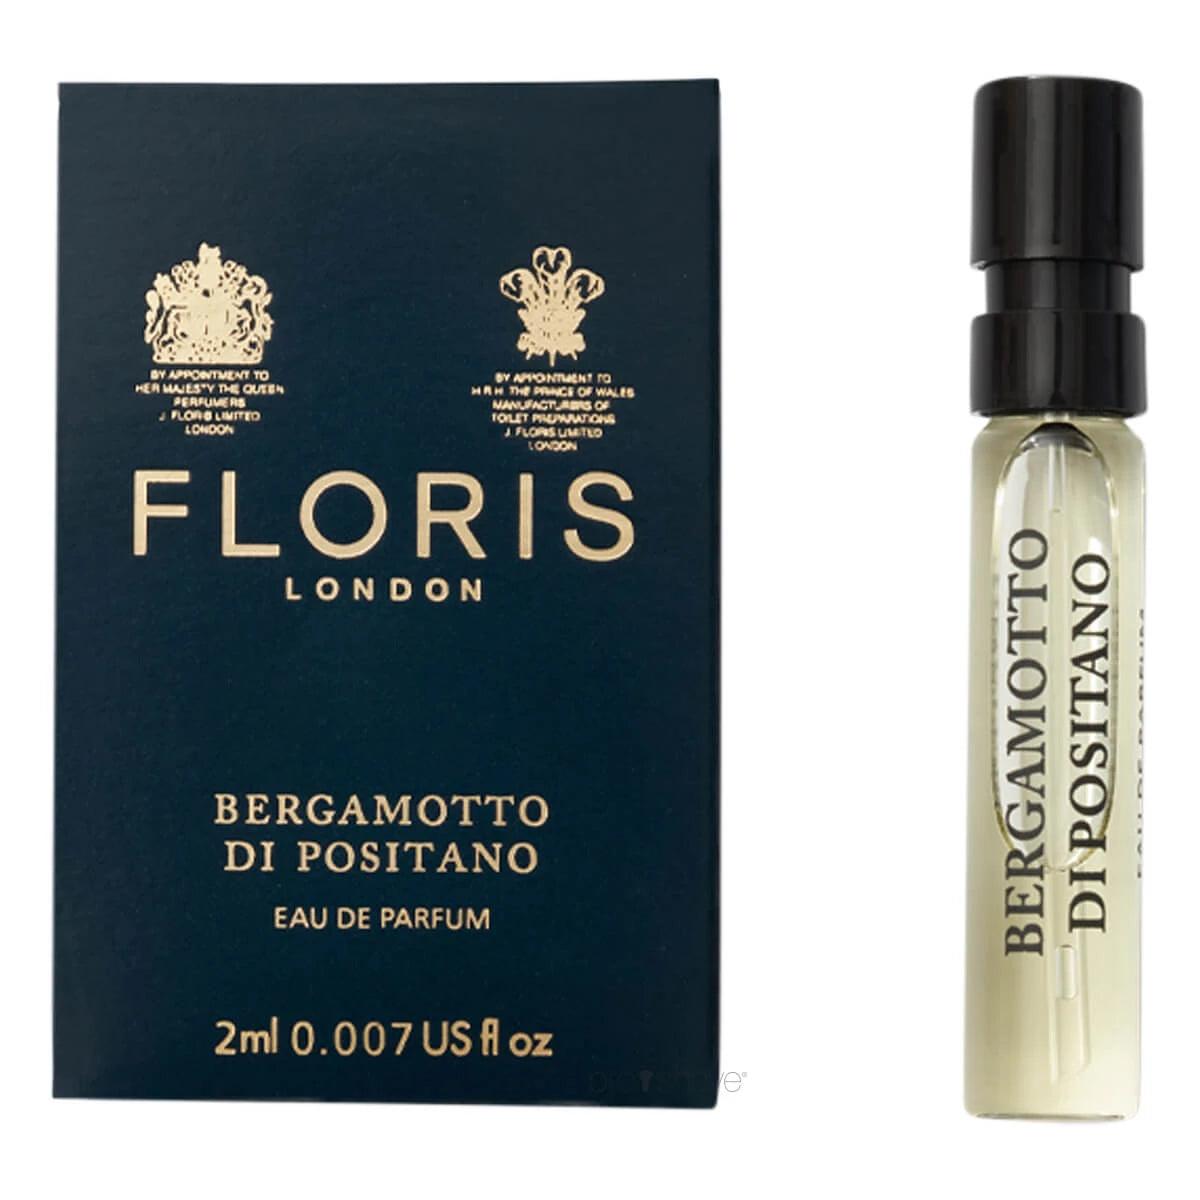 Floris Bergamotto di Positano, Eau de Parfum, 100 ml | Parfyme | Floris London | JK SHOP | JK Barber og herre frisør | Lavepriser | Best